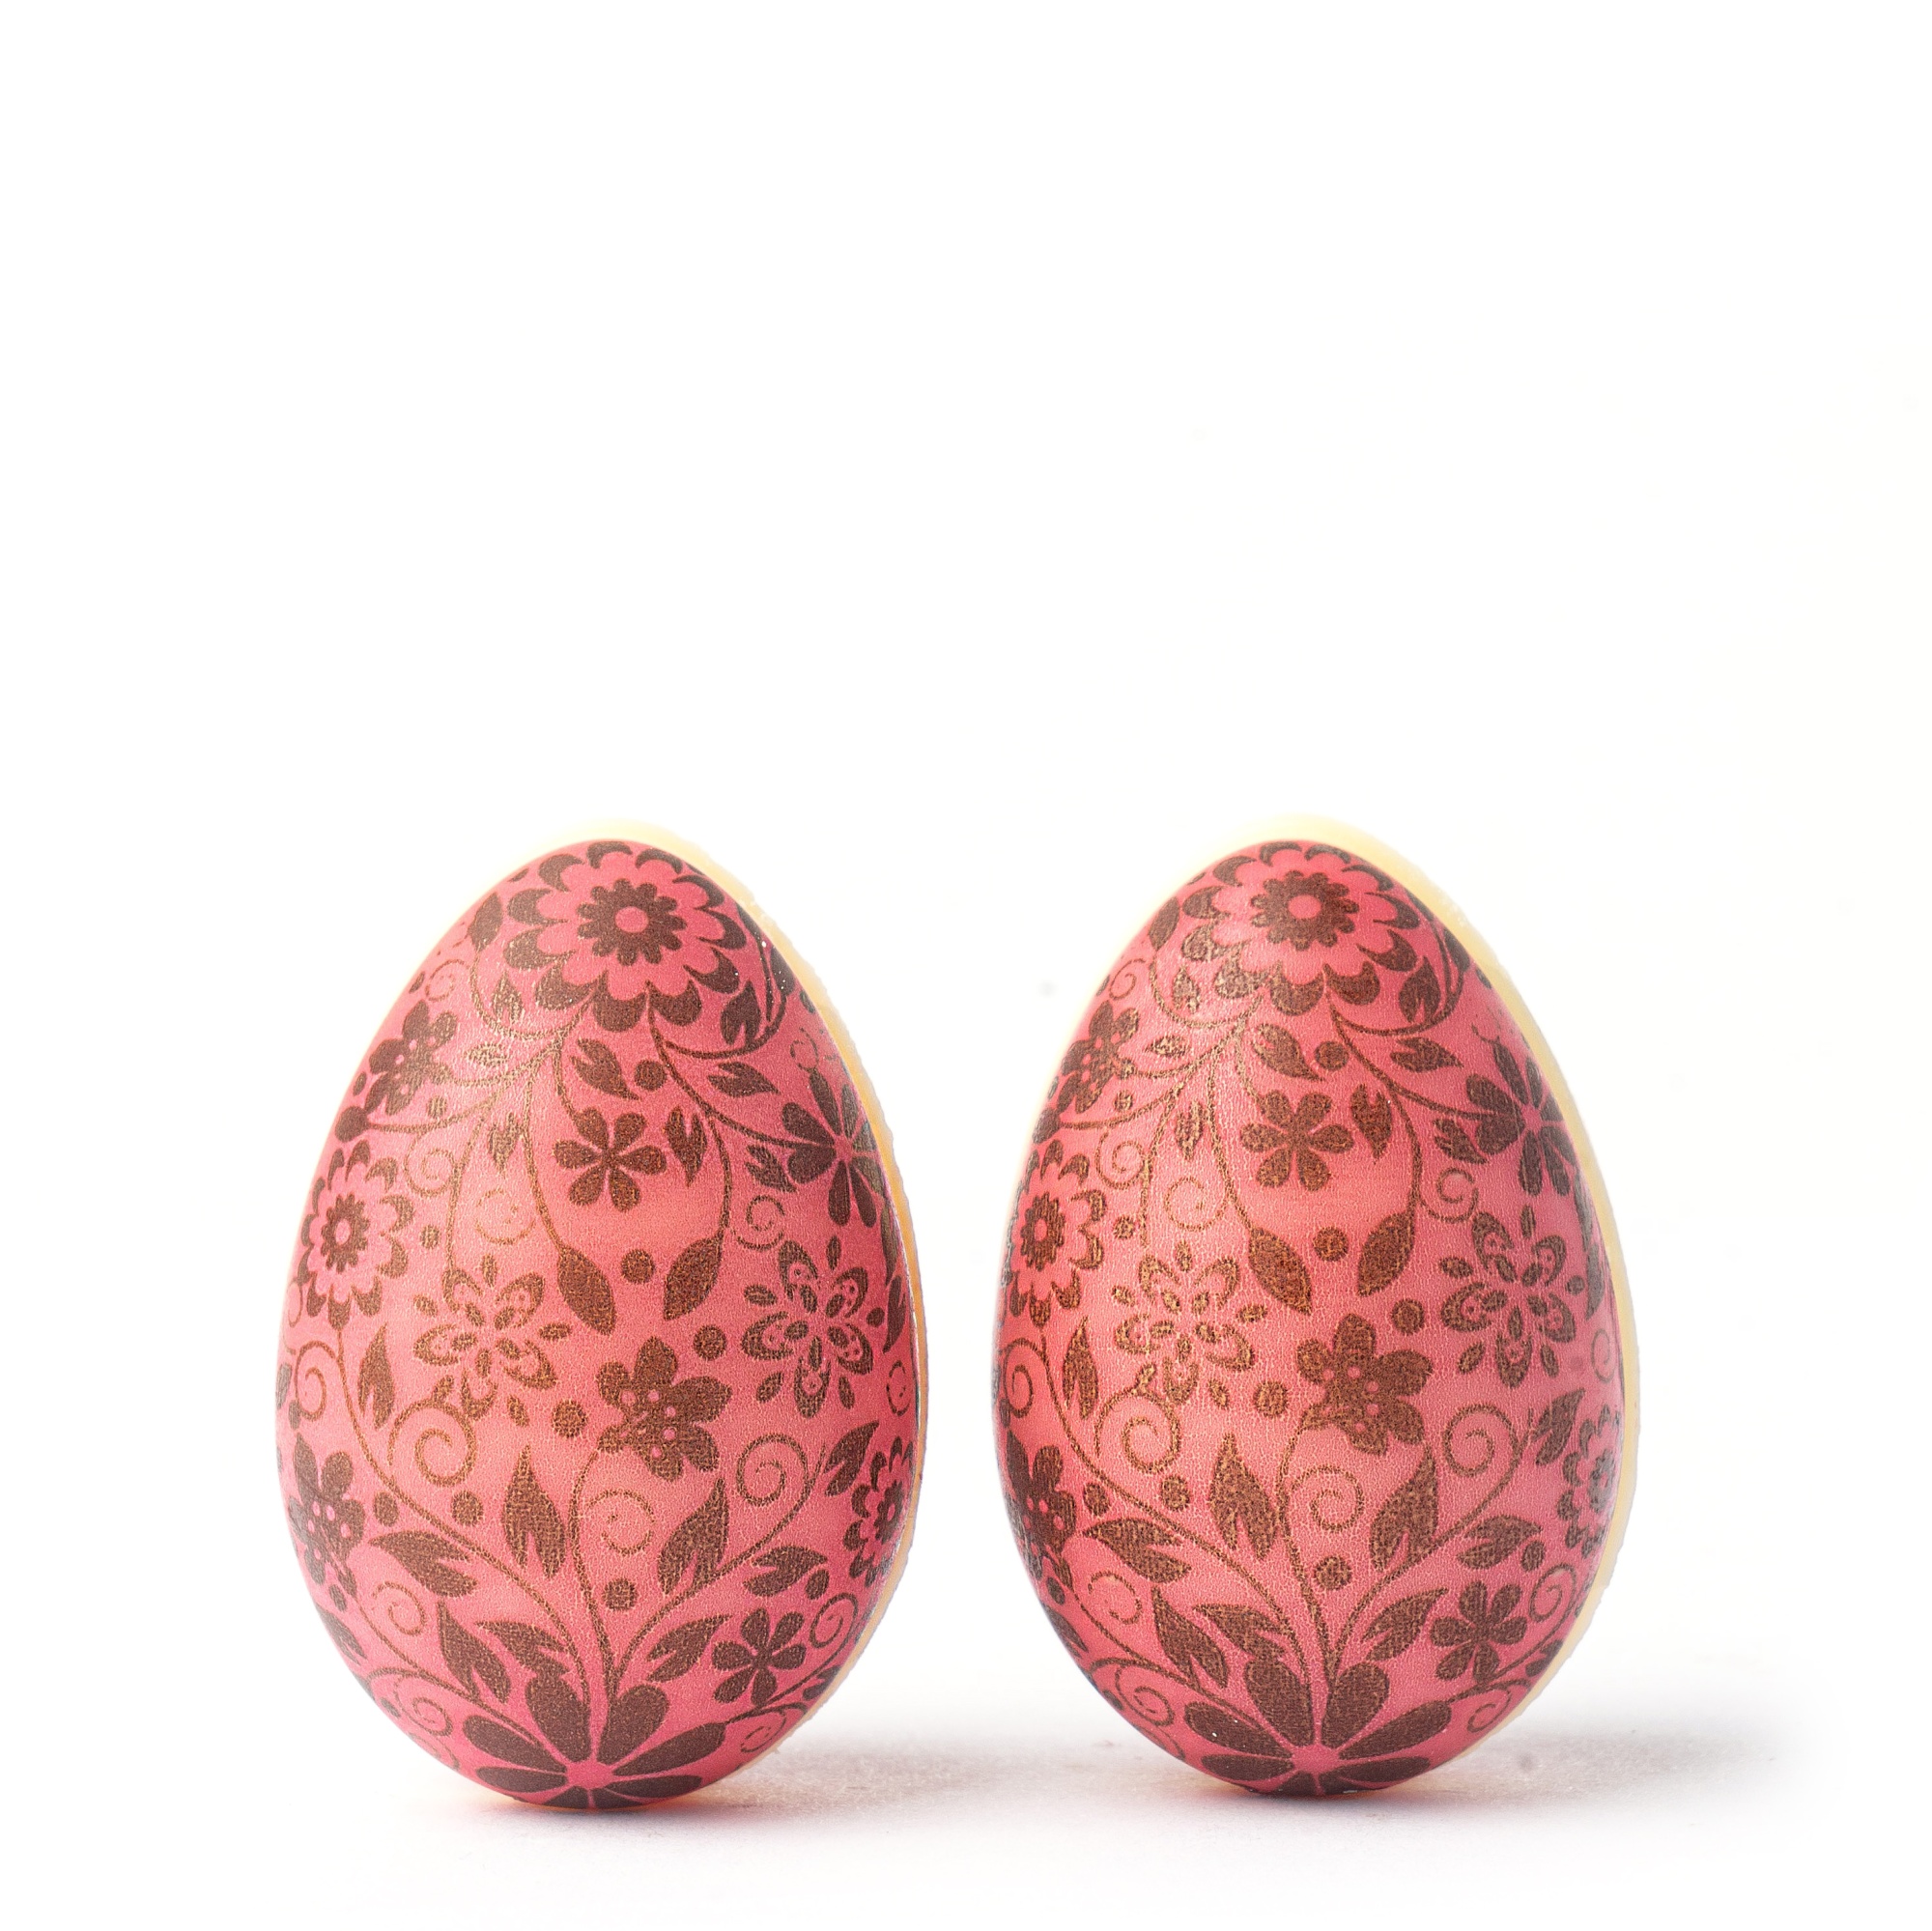 Яйца шоколадные 3D «Цветочная роспись» розовые 4х2,7 см, PCB Creation, Франция,  2 шт.  | Фото — Магазин Andy Chef  1